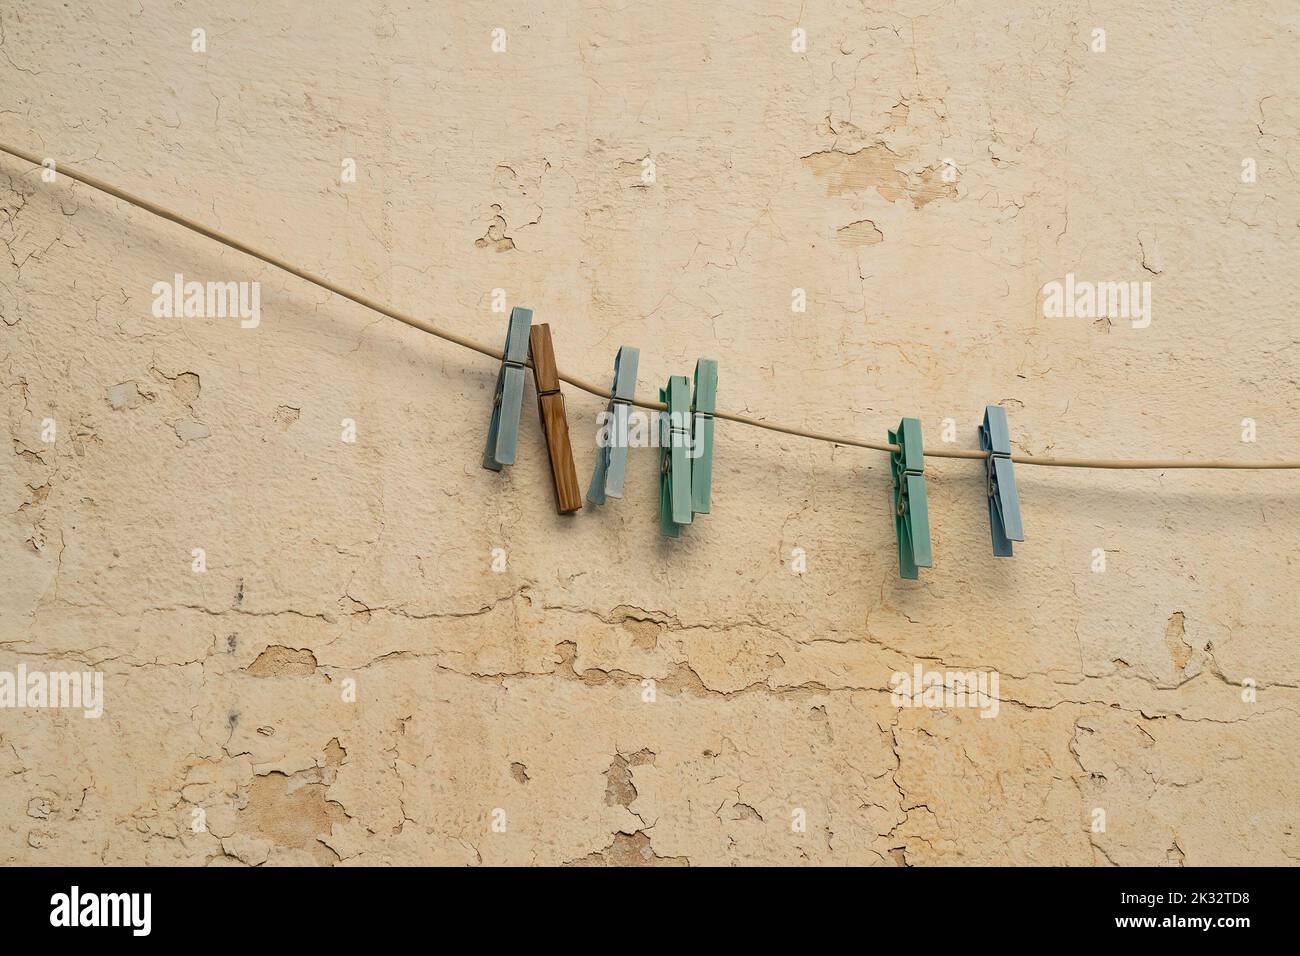 Alte Klamotten hängen an einer Wäscheleine, an einer alten, abblätternden Wand. Stockfoto